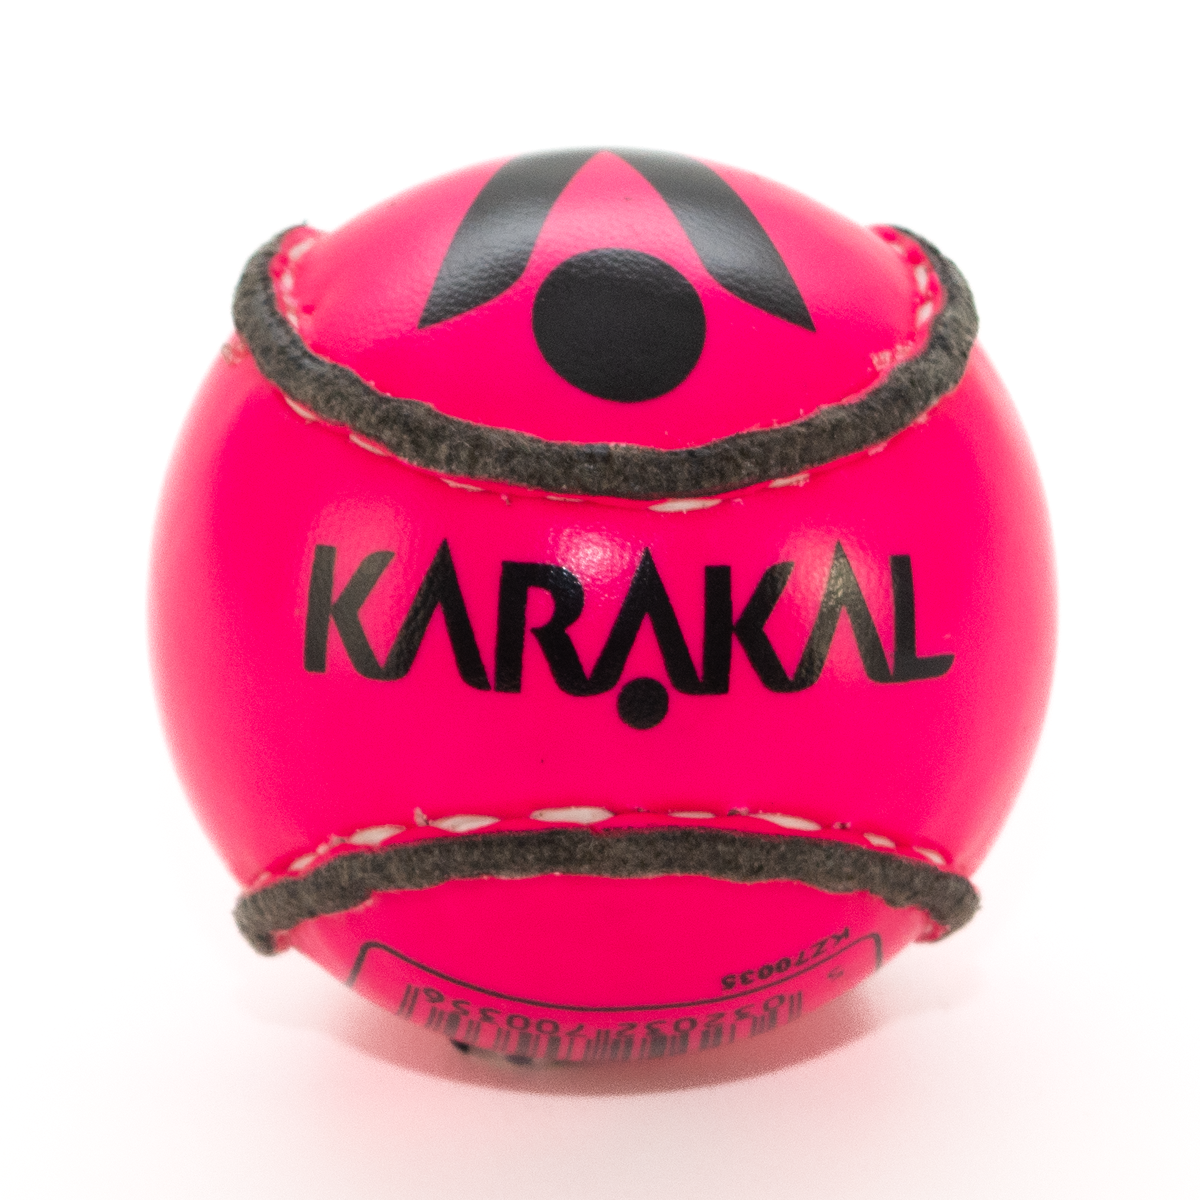 Karakal Coloured Training Sliotar - Size 4